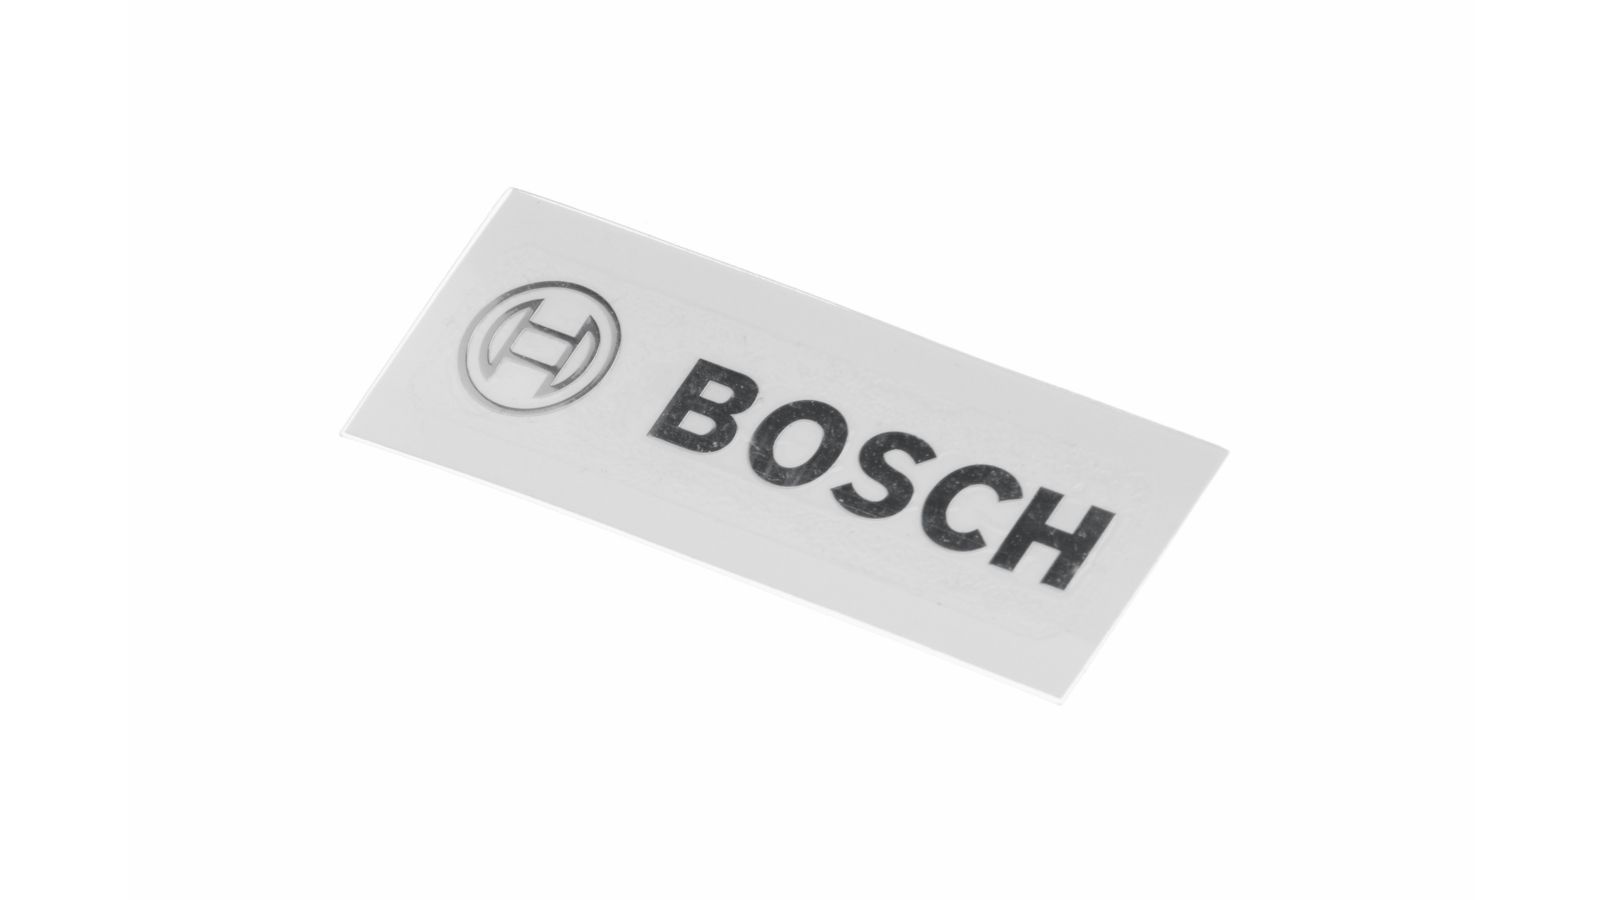 Logo, destička s logem Bosch do chladničky, mrazničky a myčky nádobí Bosch Siemens - 00614976 BSH - Bosch / Siemens